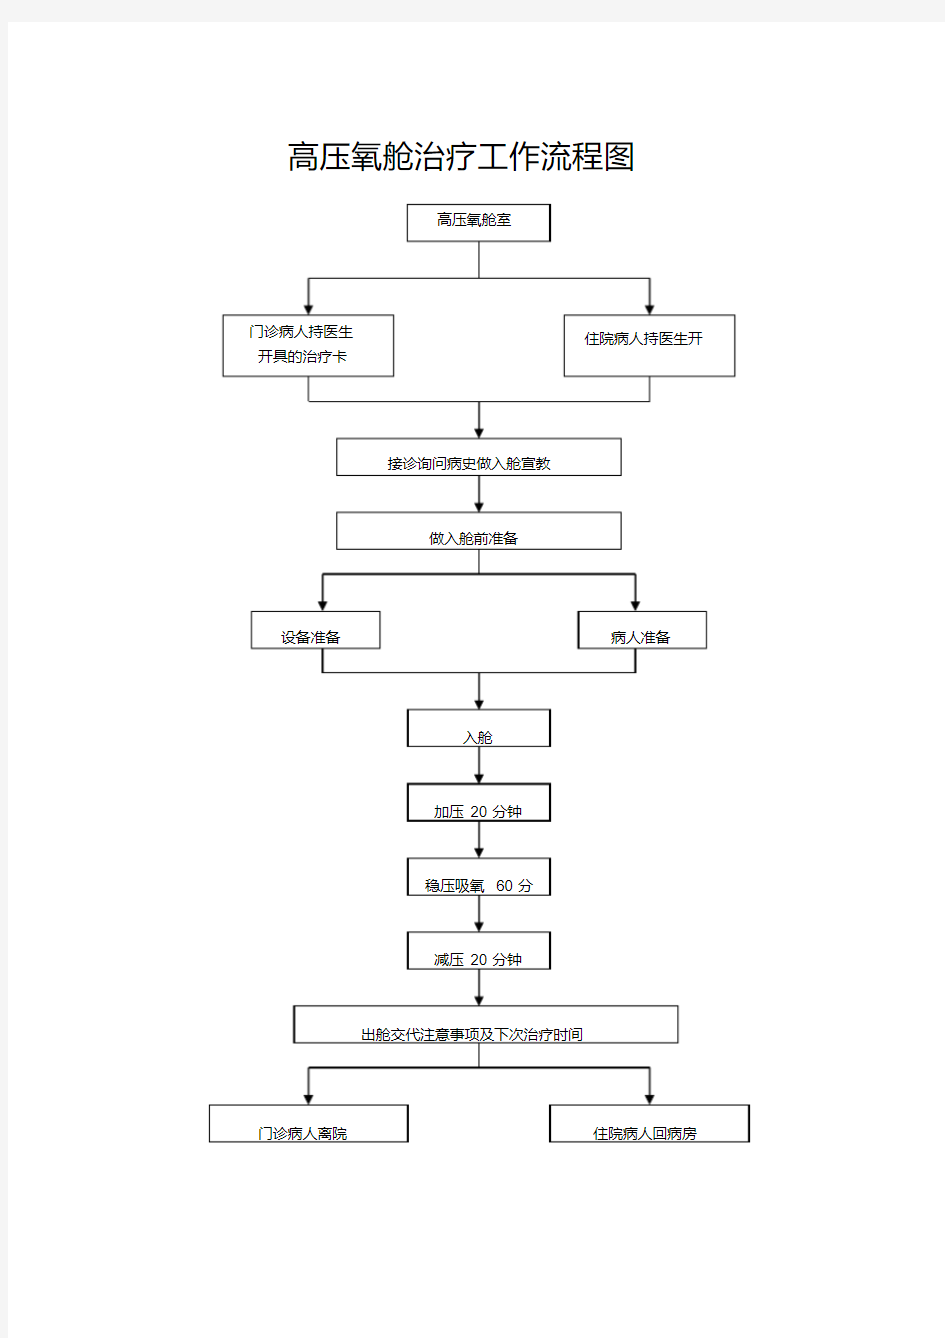 高压氧仓治疗工作流程图.pdf